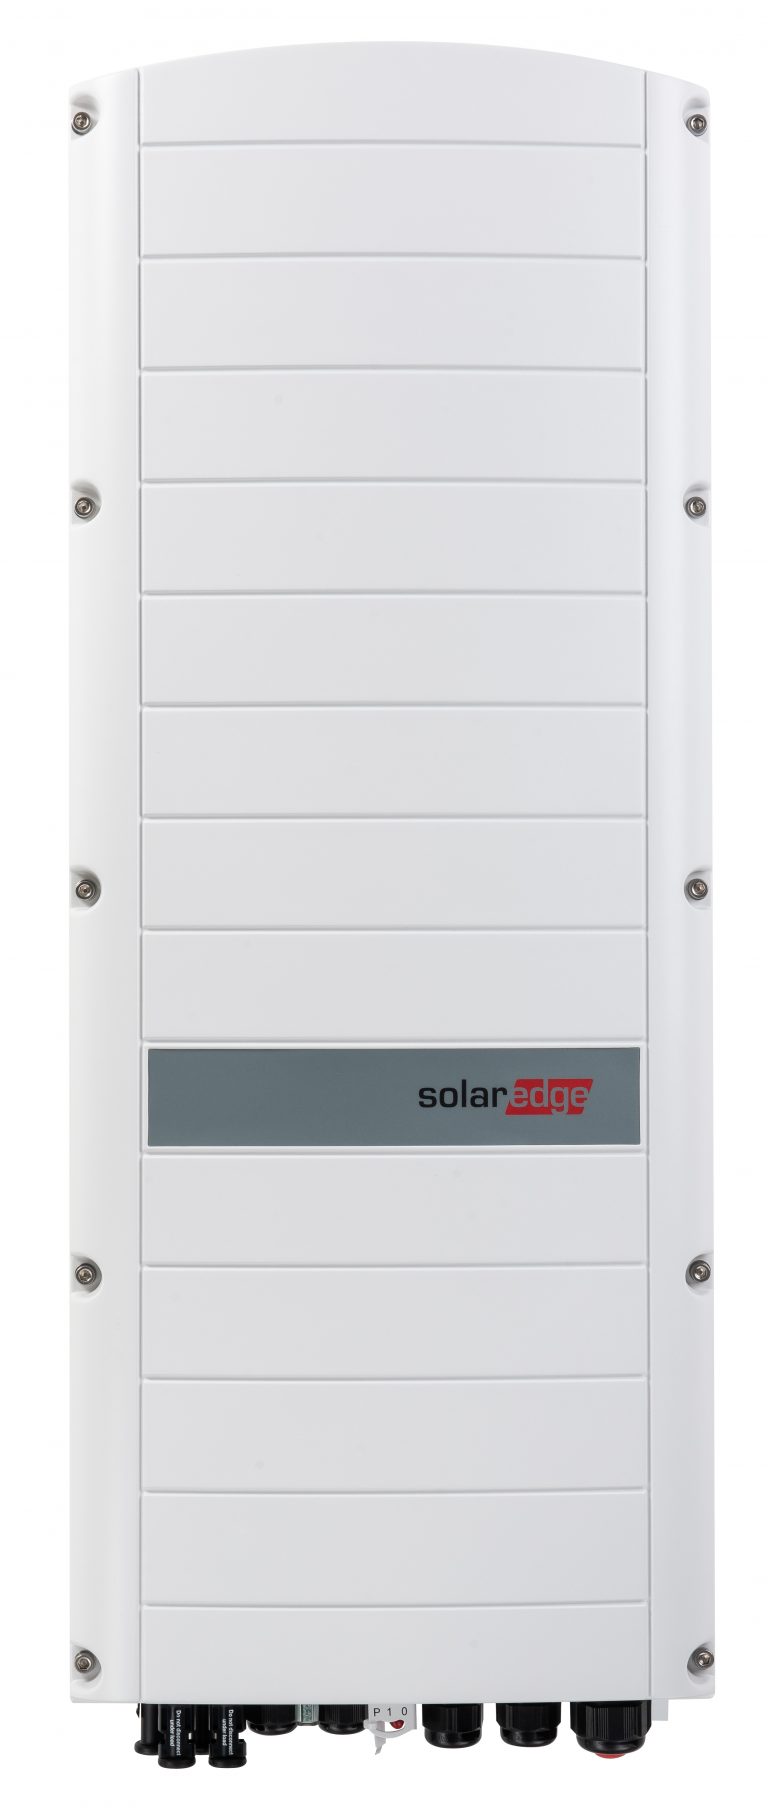 L’inverter trifase di SolarEdge è ora disponibile in Italia